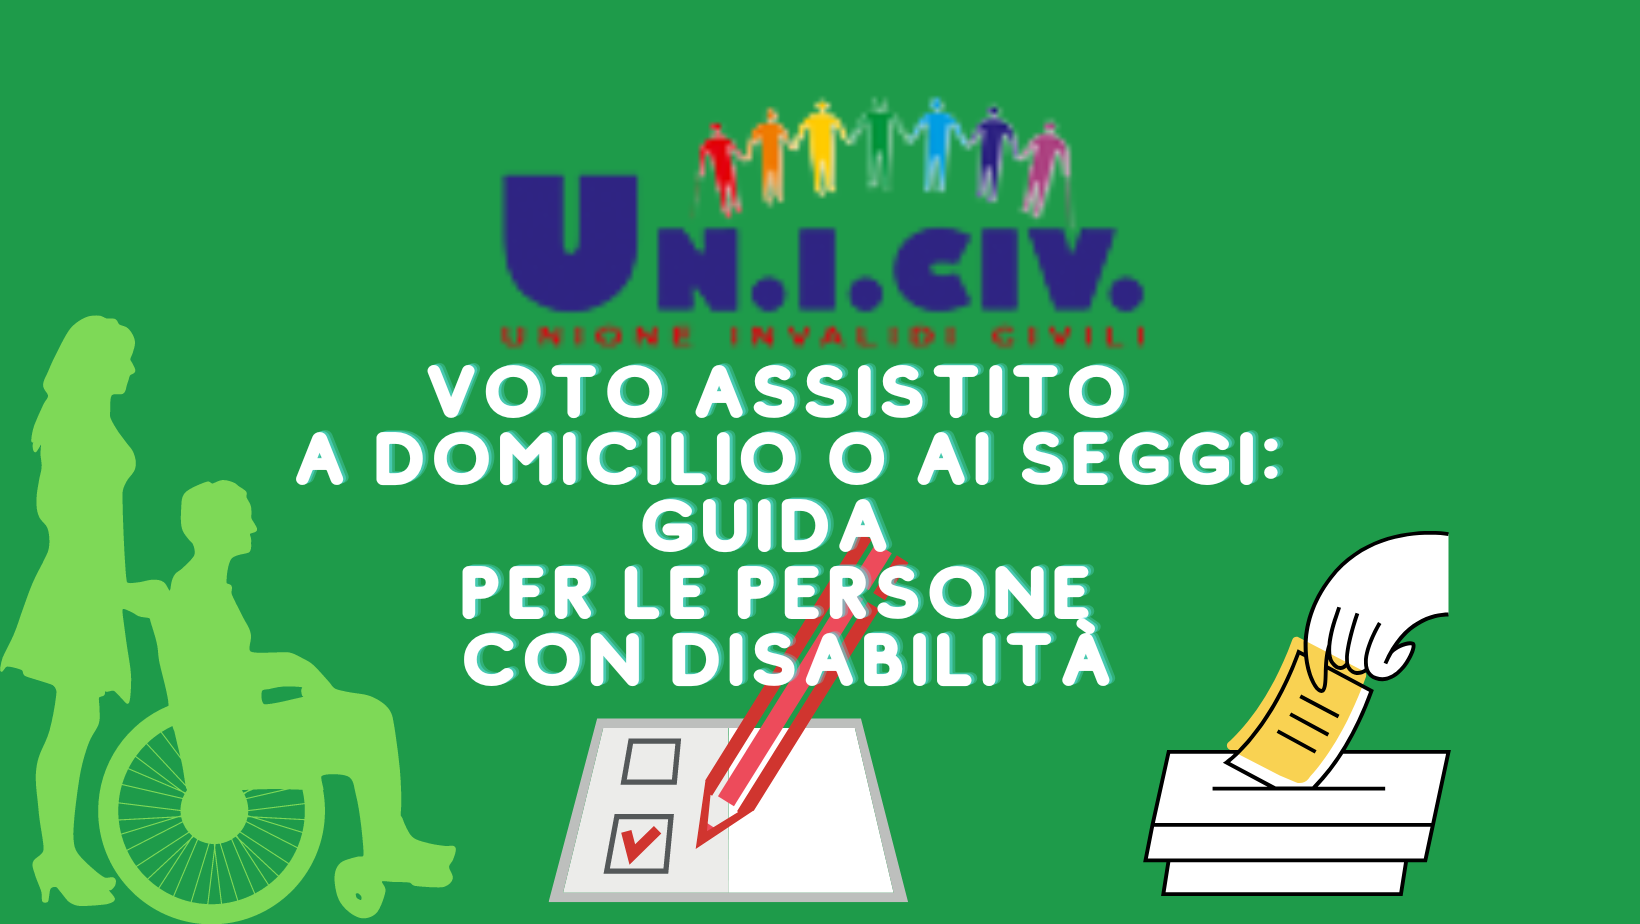 Elezioni. Voto assistito,           a domicilio o ai seggi:     guida per le persone con disabilità.